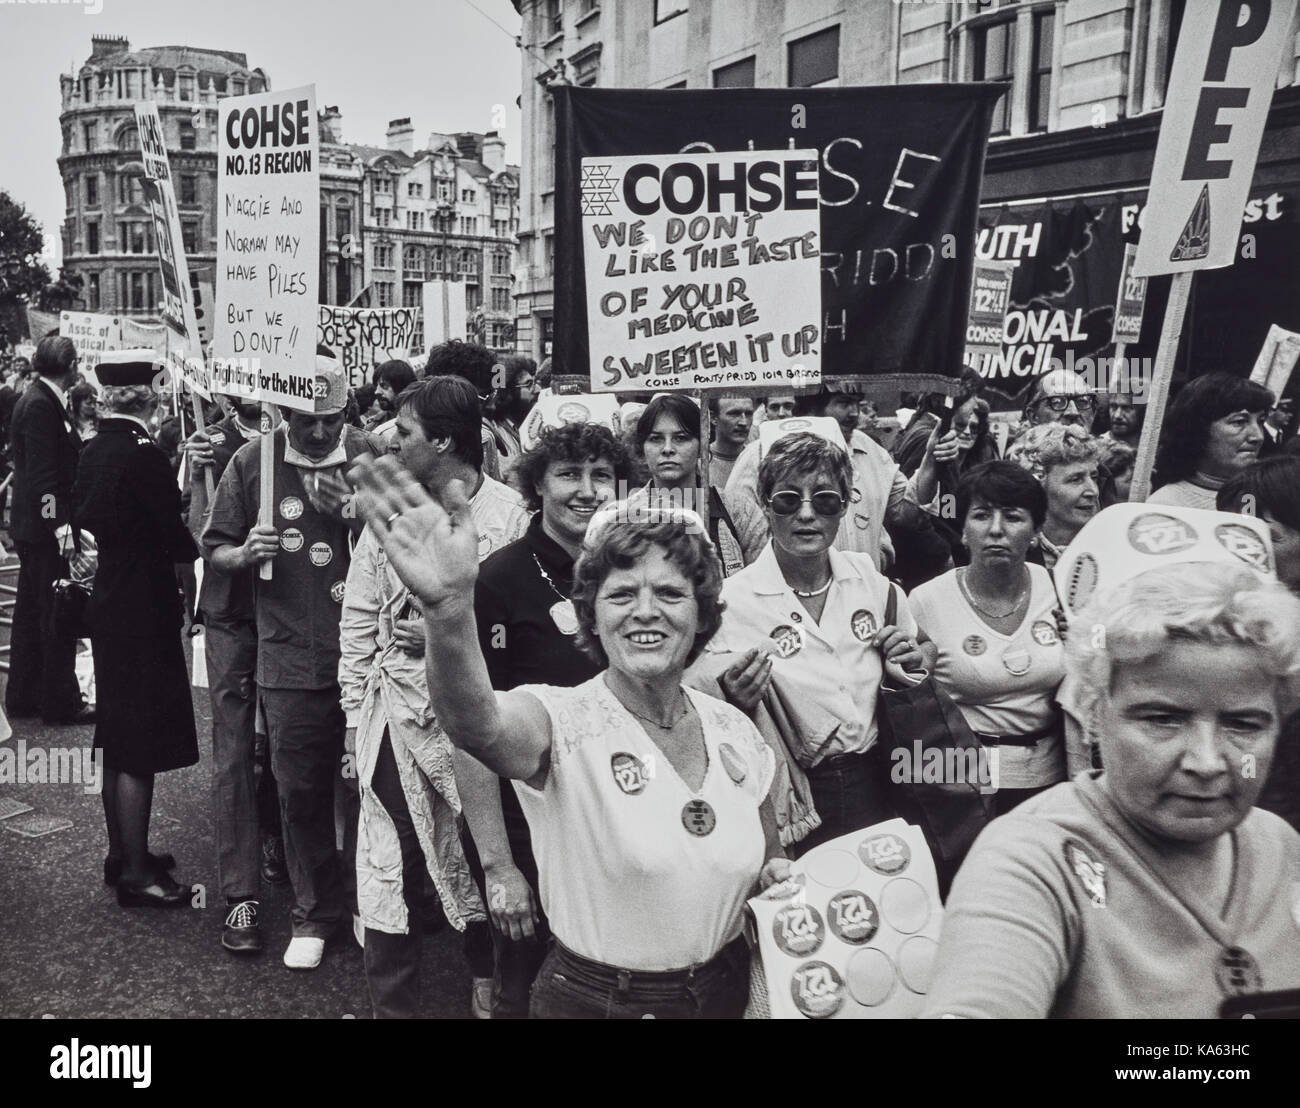 COHSE de mars à Londres, les infirmières et infirmiers 1986 Banque D'Images